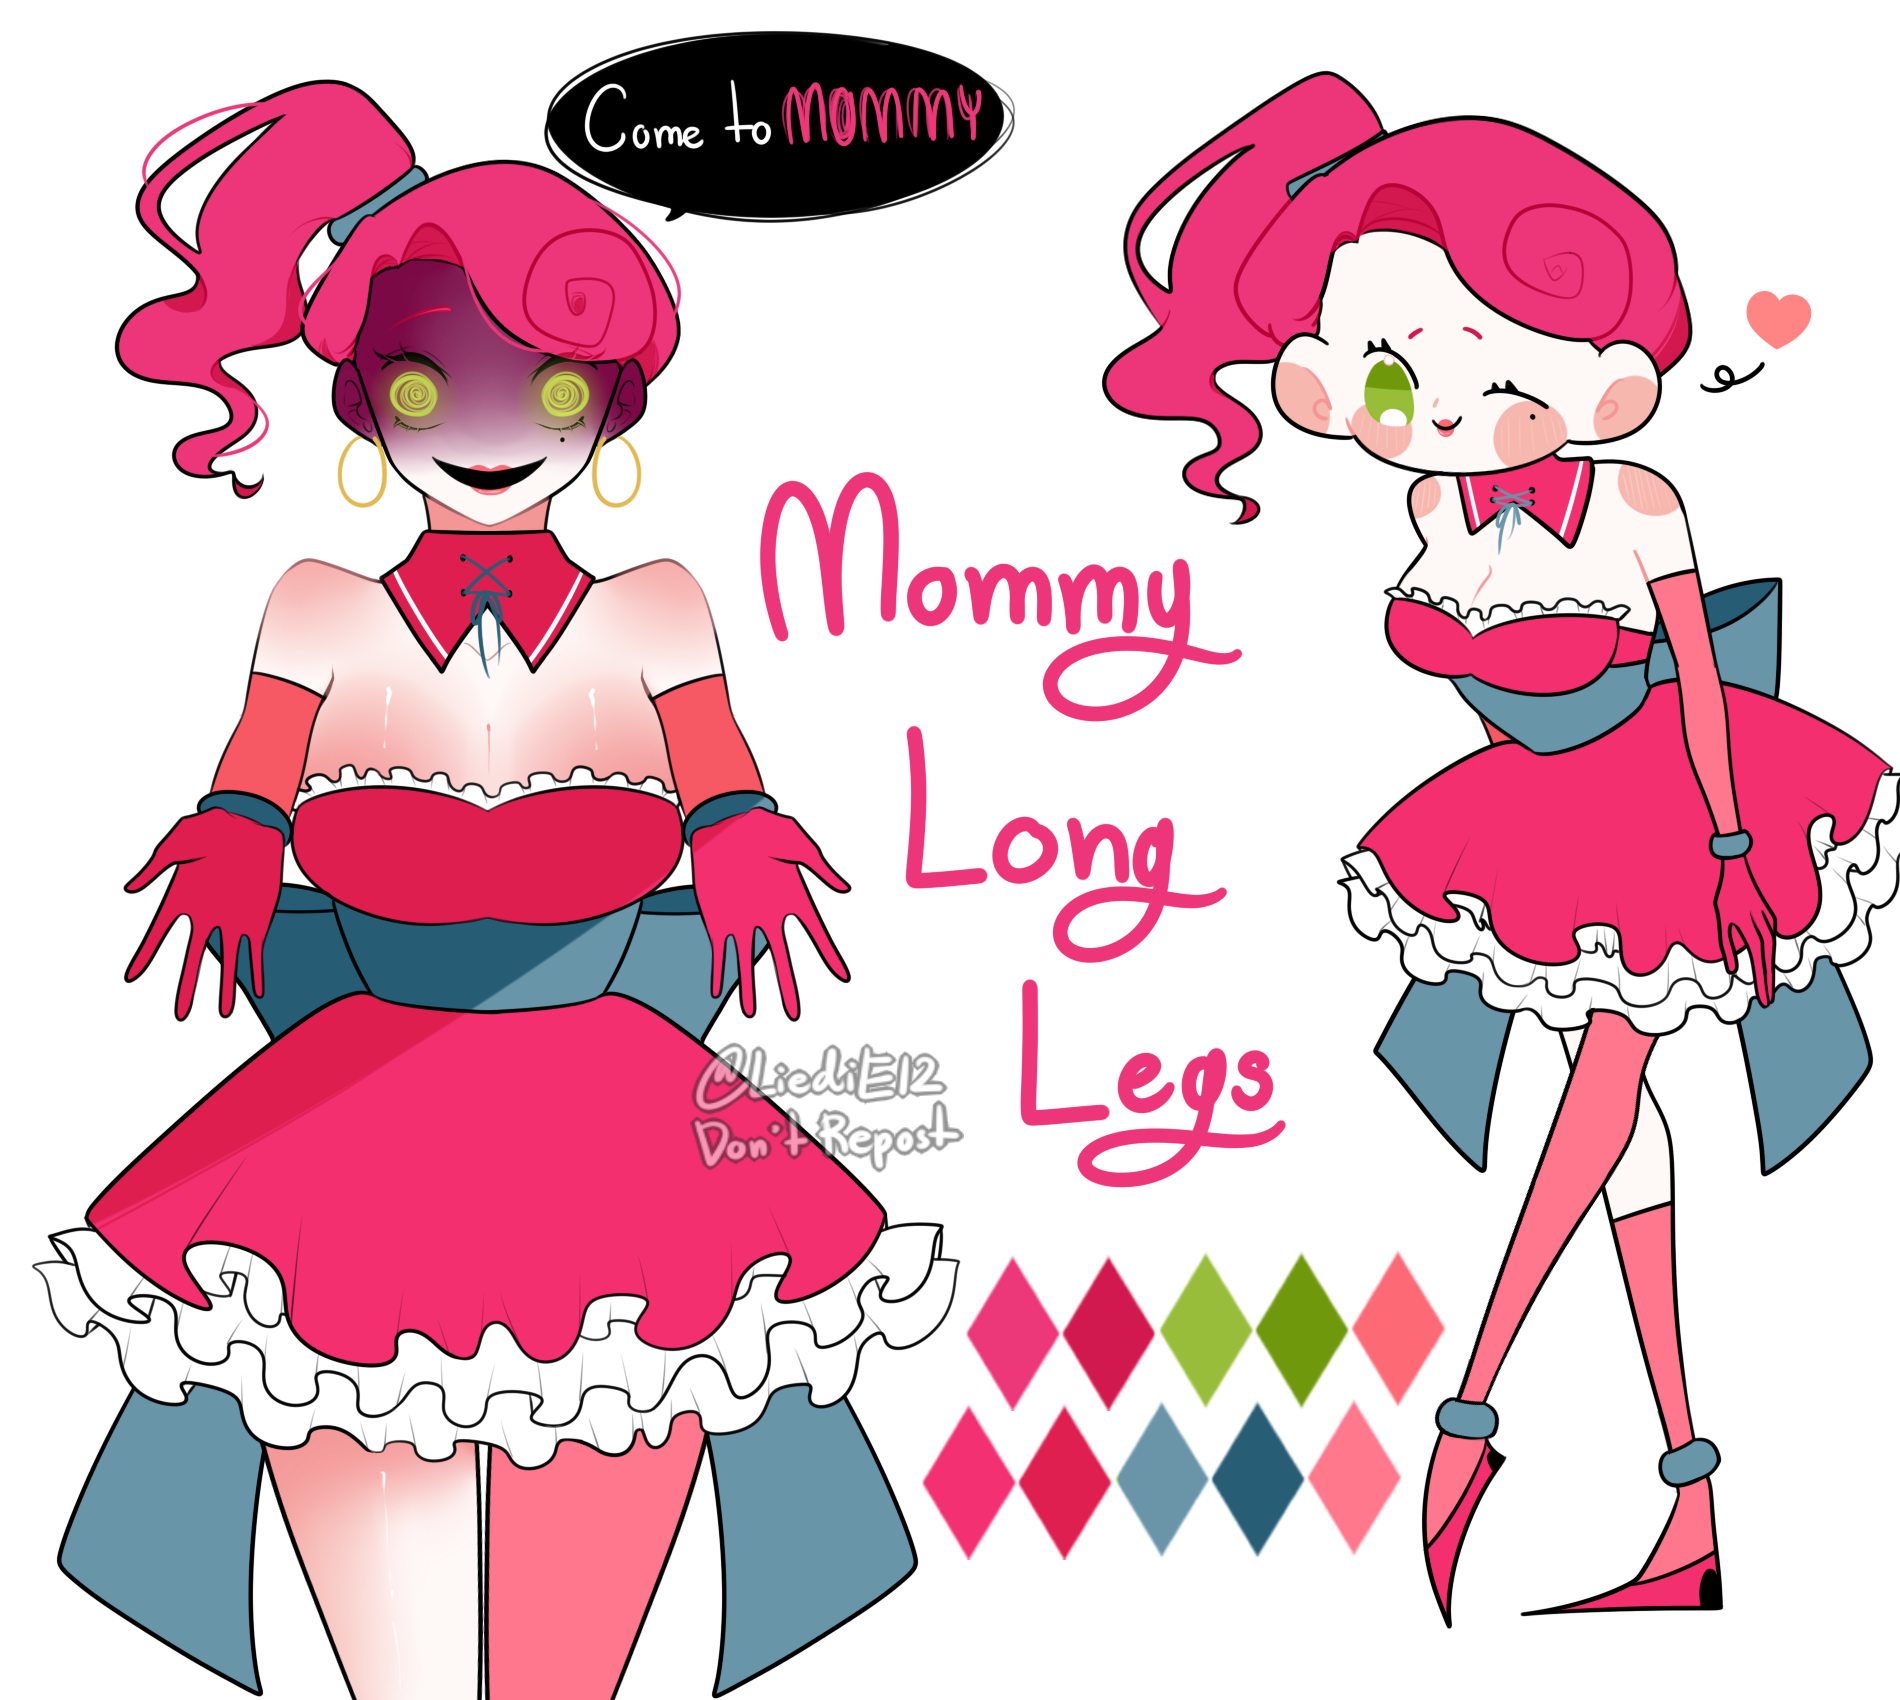 Mommy Long Legs [Poppy Playtime fanart], Mommy Long Legs